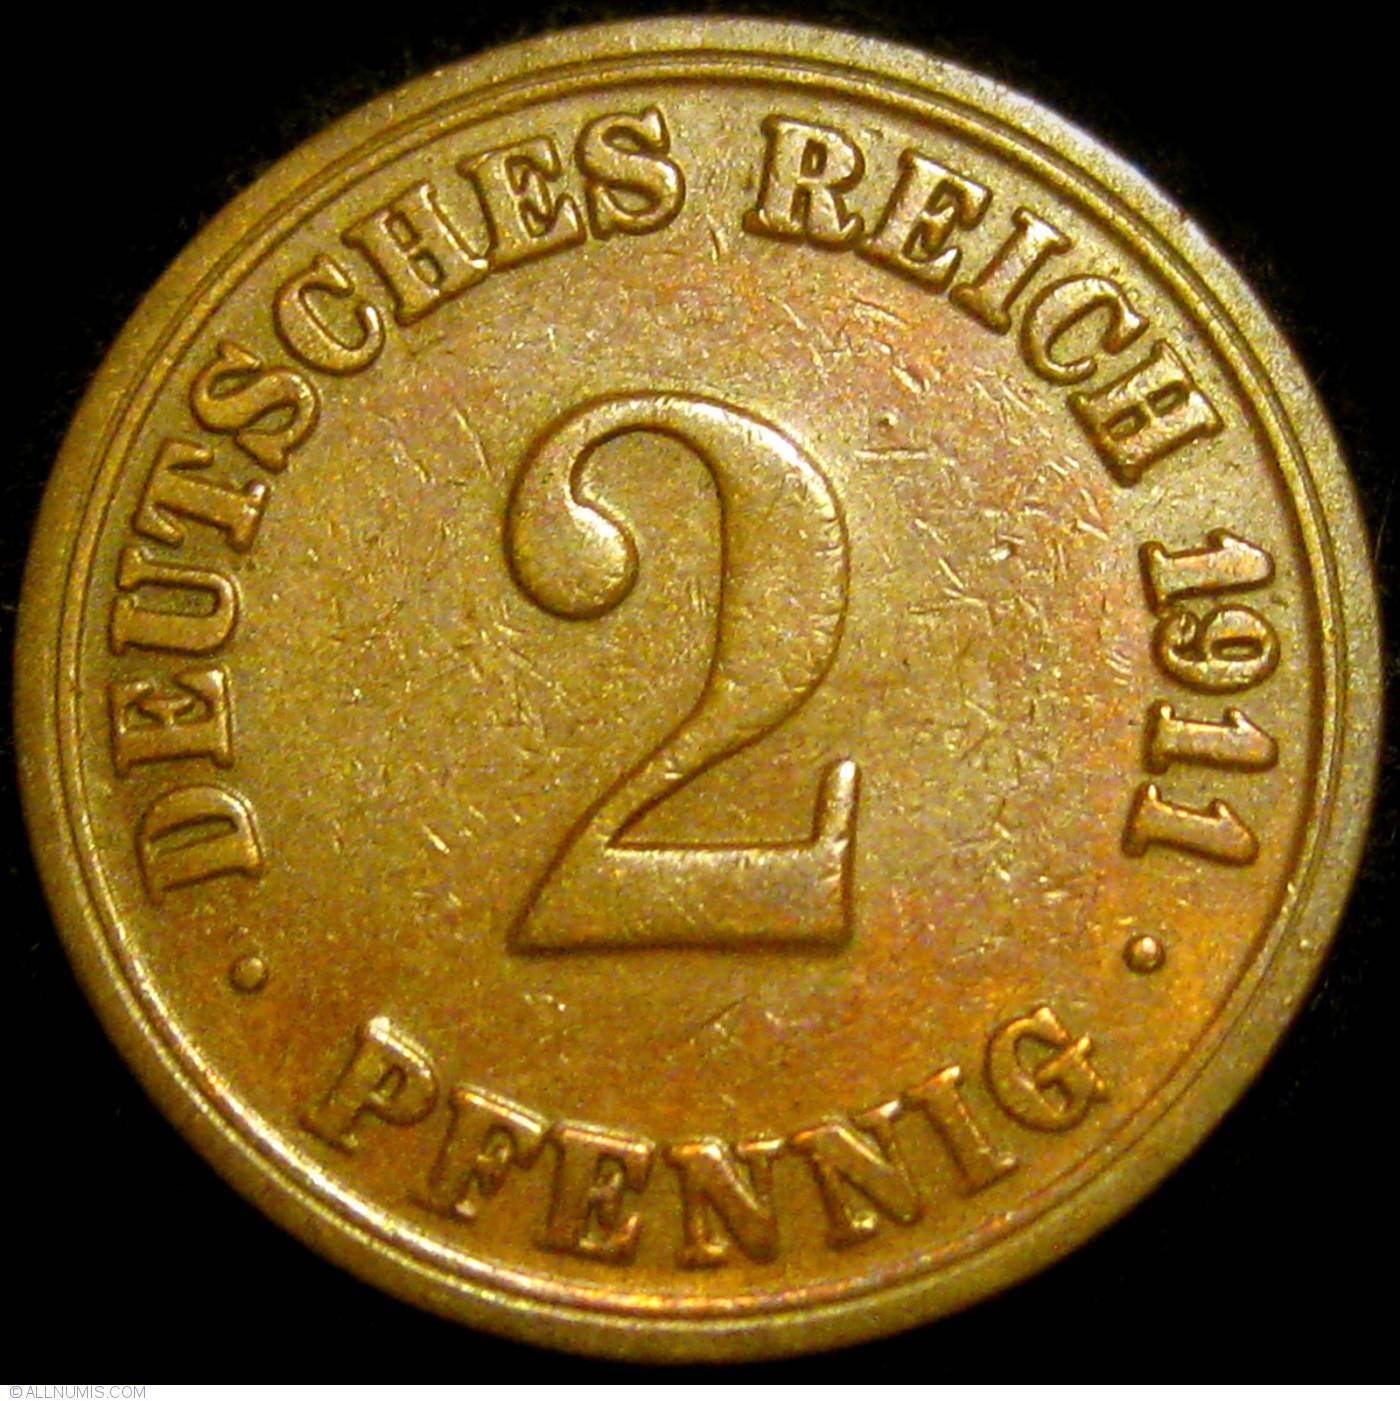 2 Pfennig 1911 A, Wilhelm II (1888-1918) - Germany - Coin - 21386